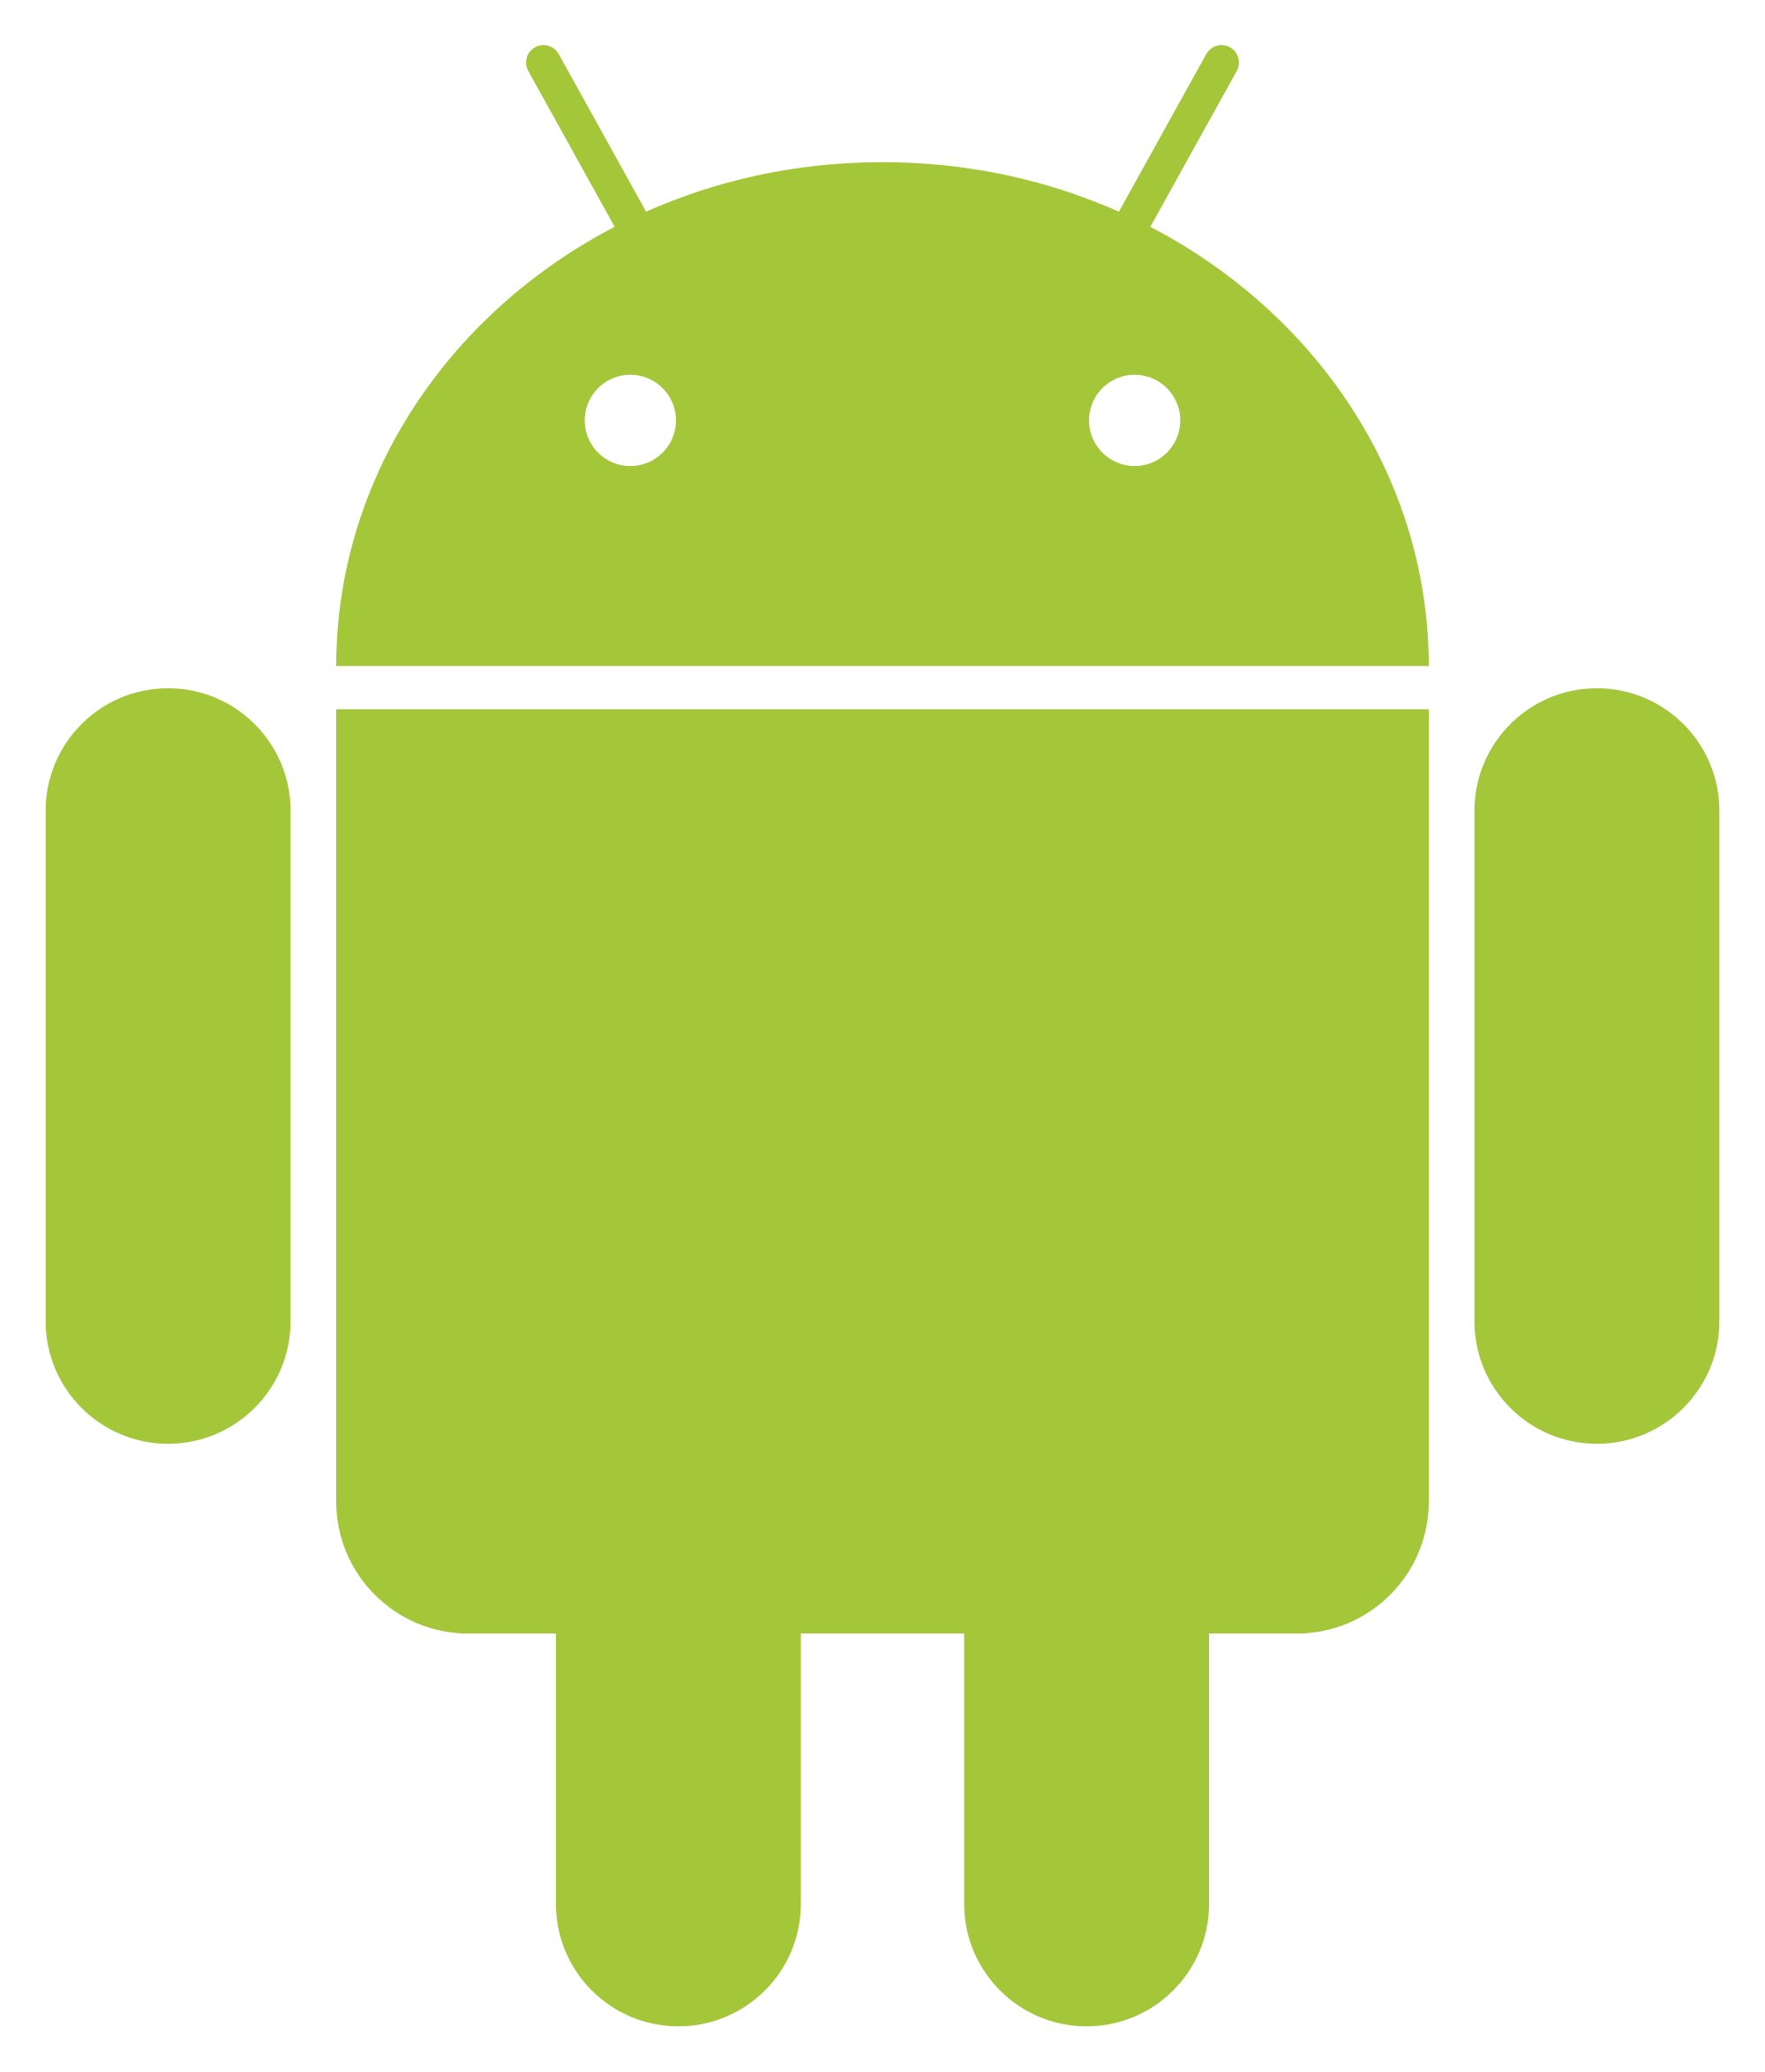 Андроид. Символ андроид. Значок Android. Логотип андроид вектор. Pictures android